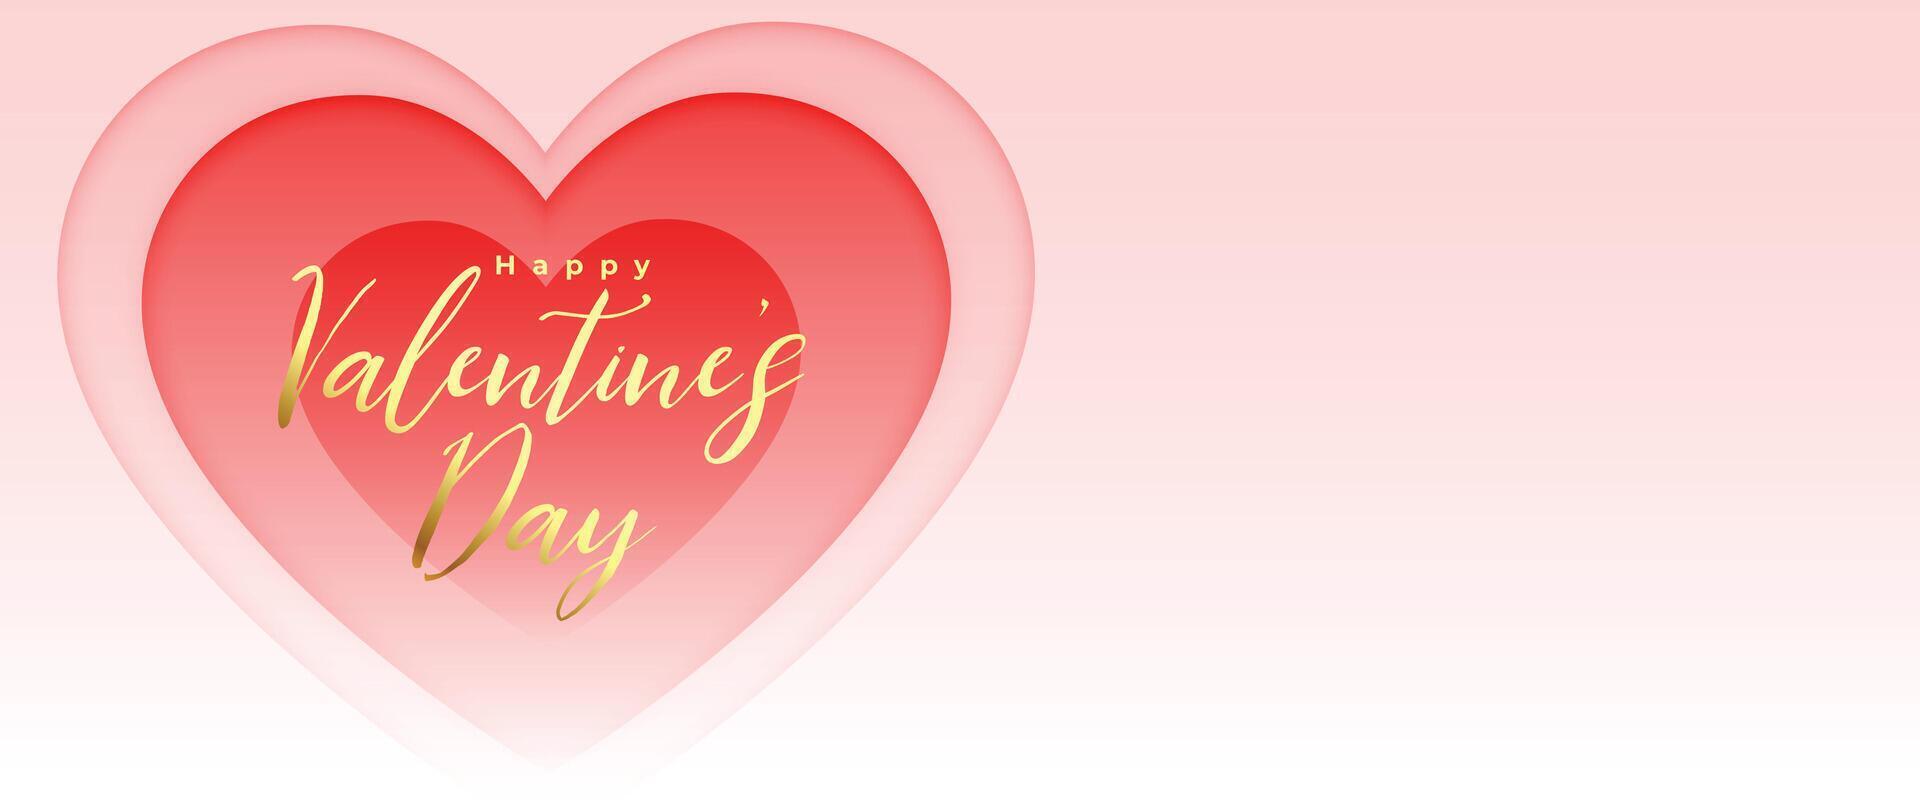 romantisch Valentinsgrüße Tag Banner zum Ihre Sozial Medien Beiträge vektor